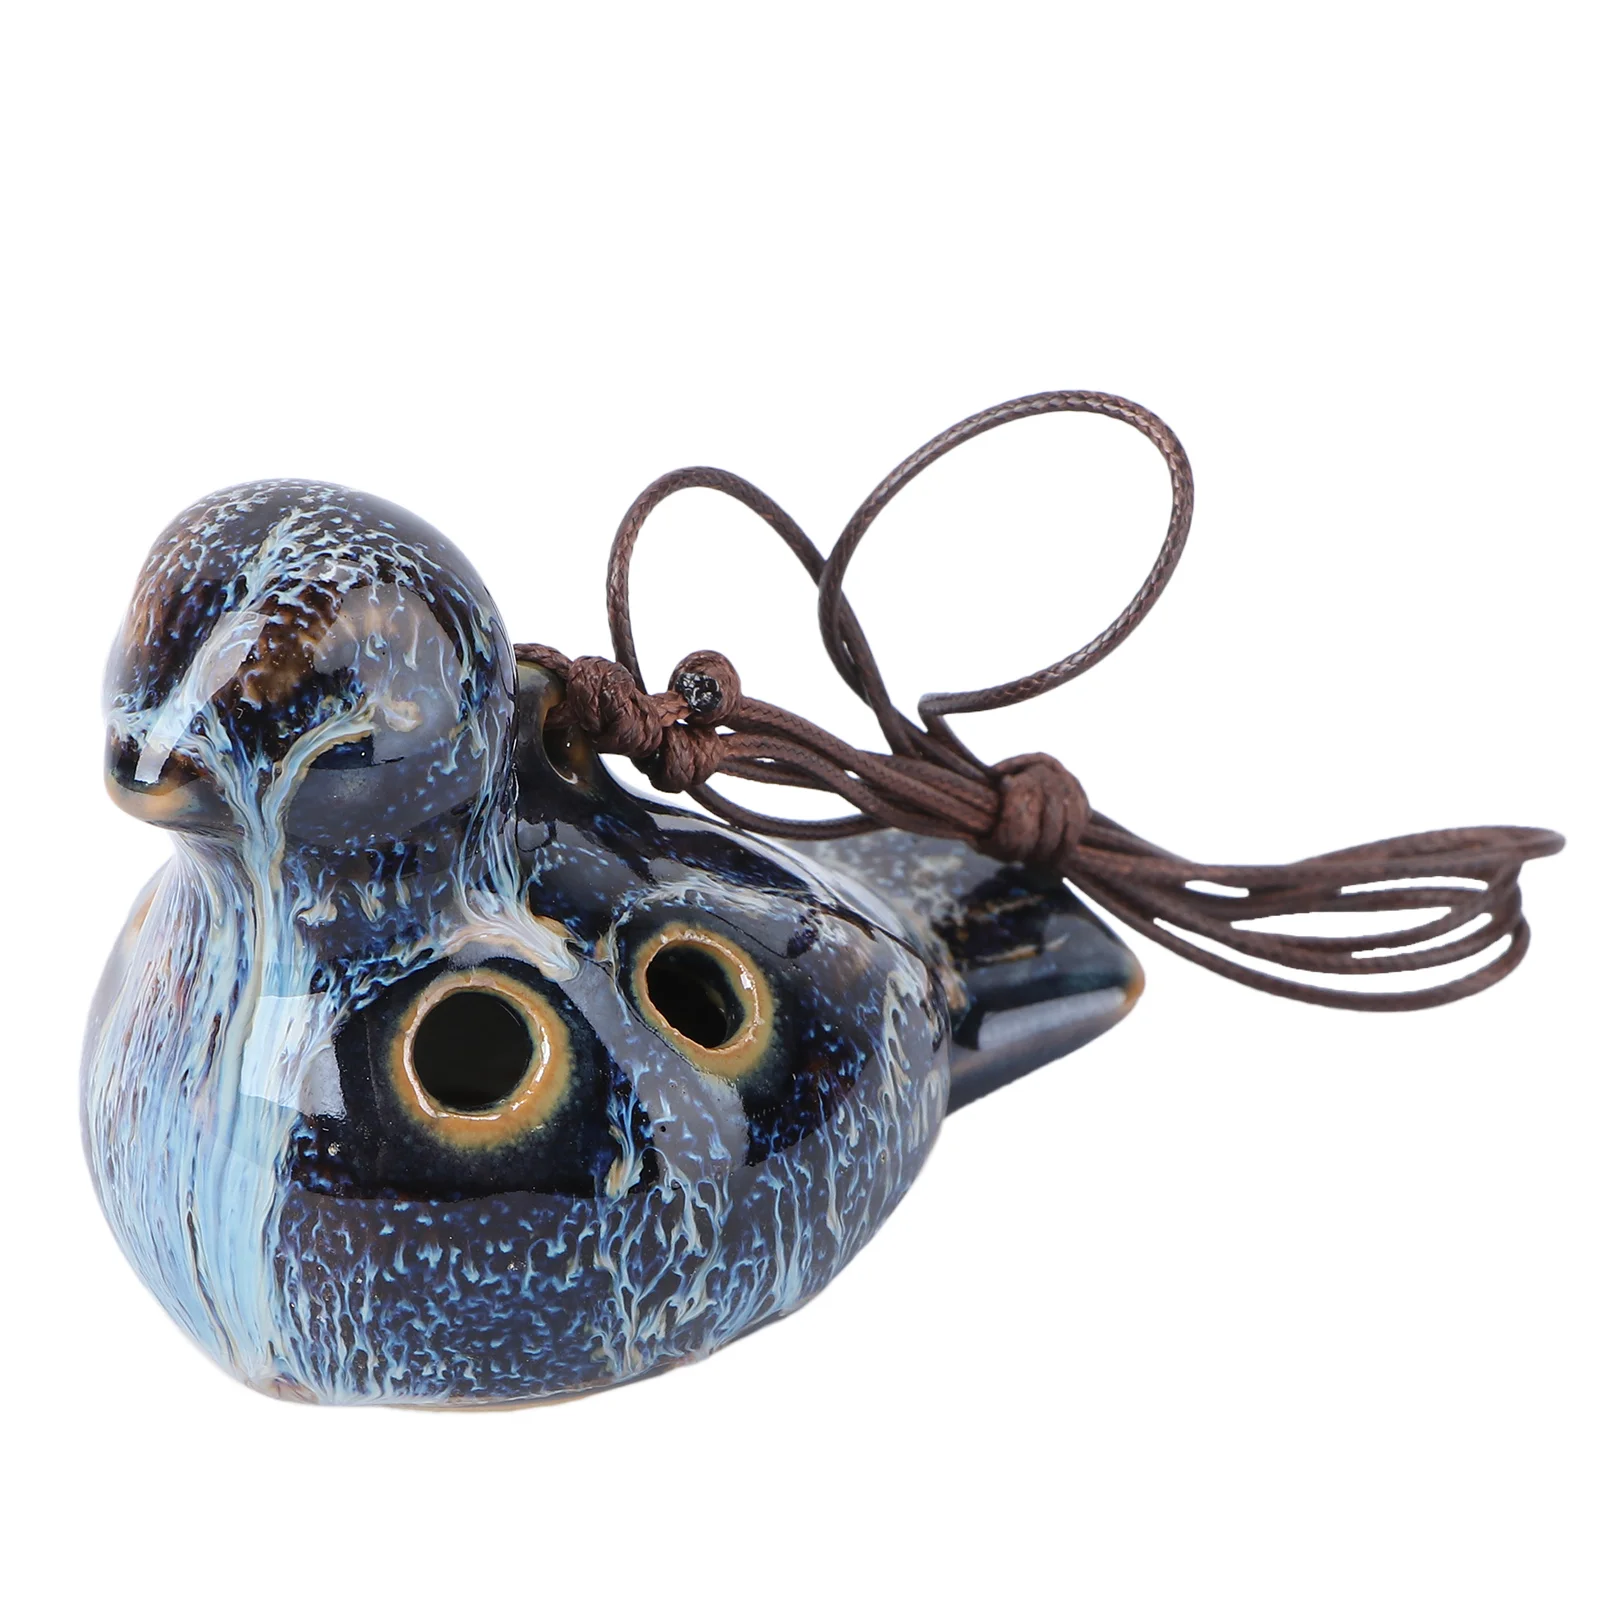 

Портативный керамический инструмент Ocarina с 6 отверстиями в форме птицы, подарок для начинающих профессиональных художников